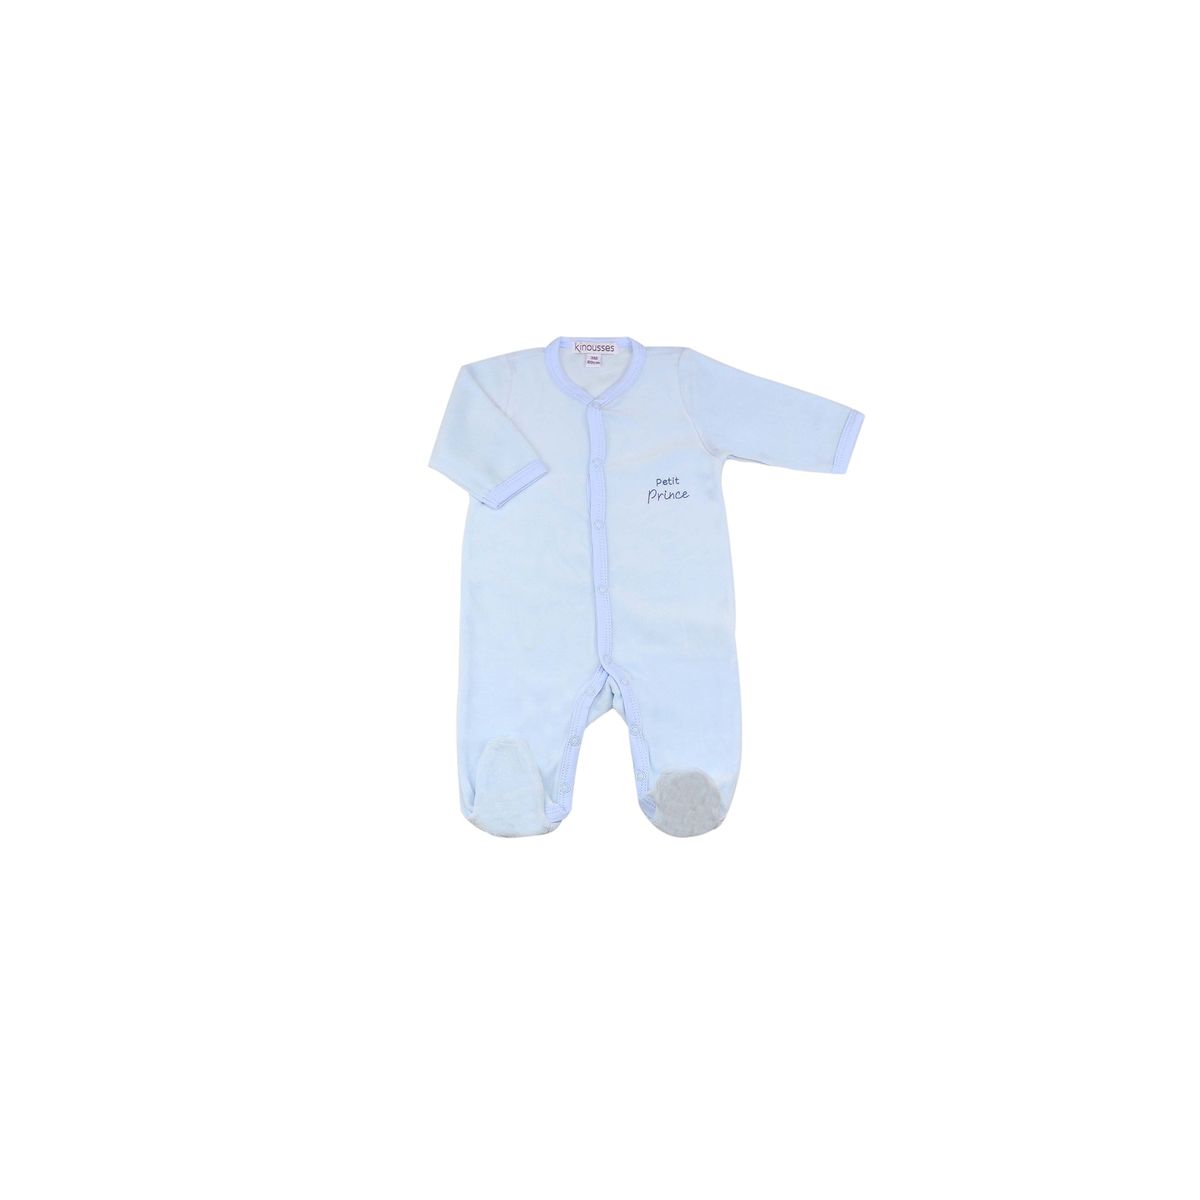 Ensemble bébé lapin bleu clair 3 pièces - Vêtements Bébé garçon (0